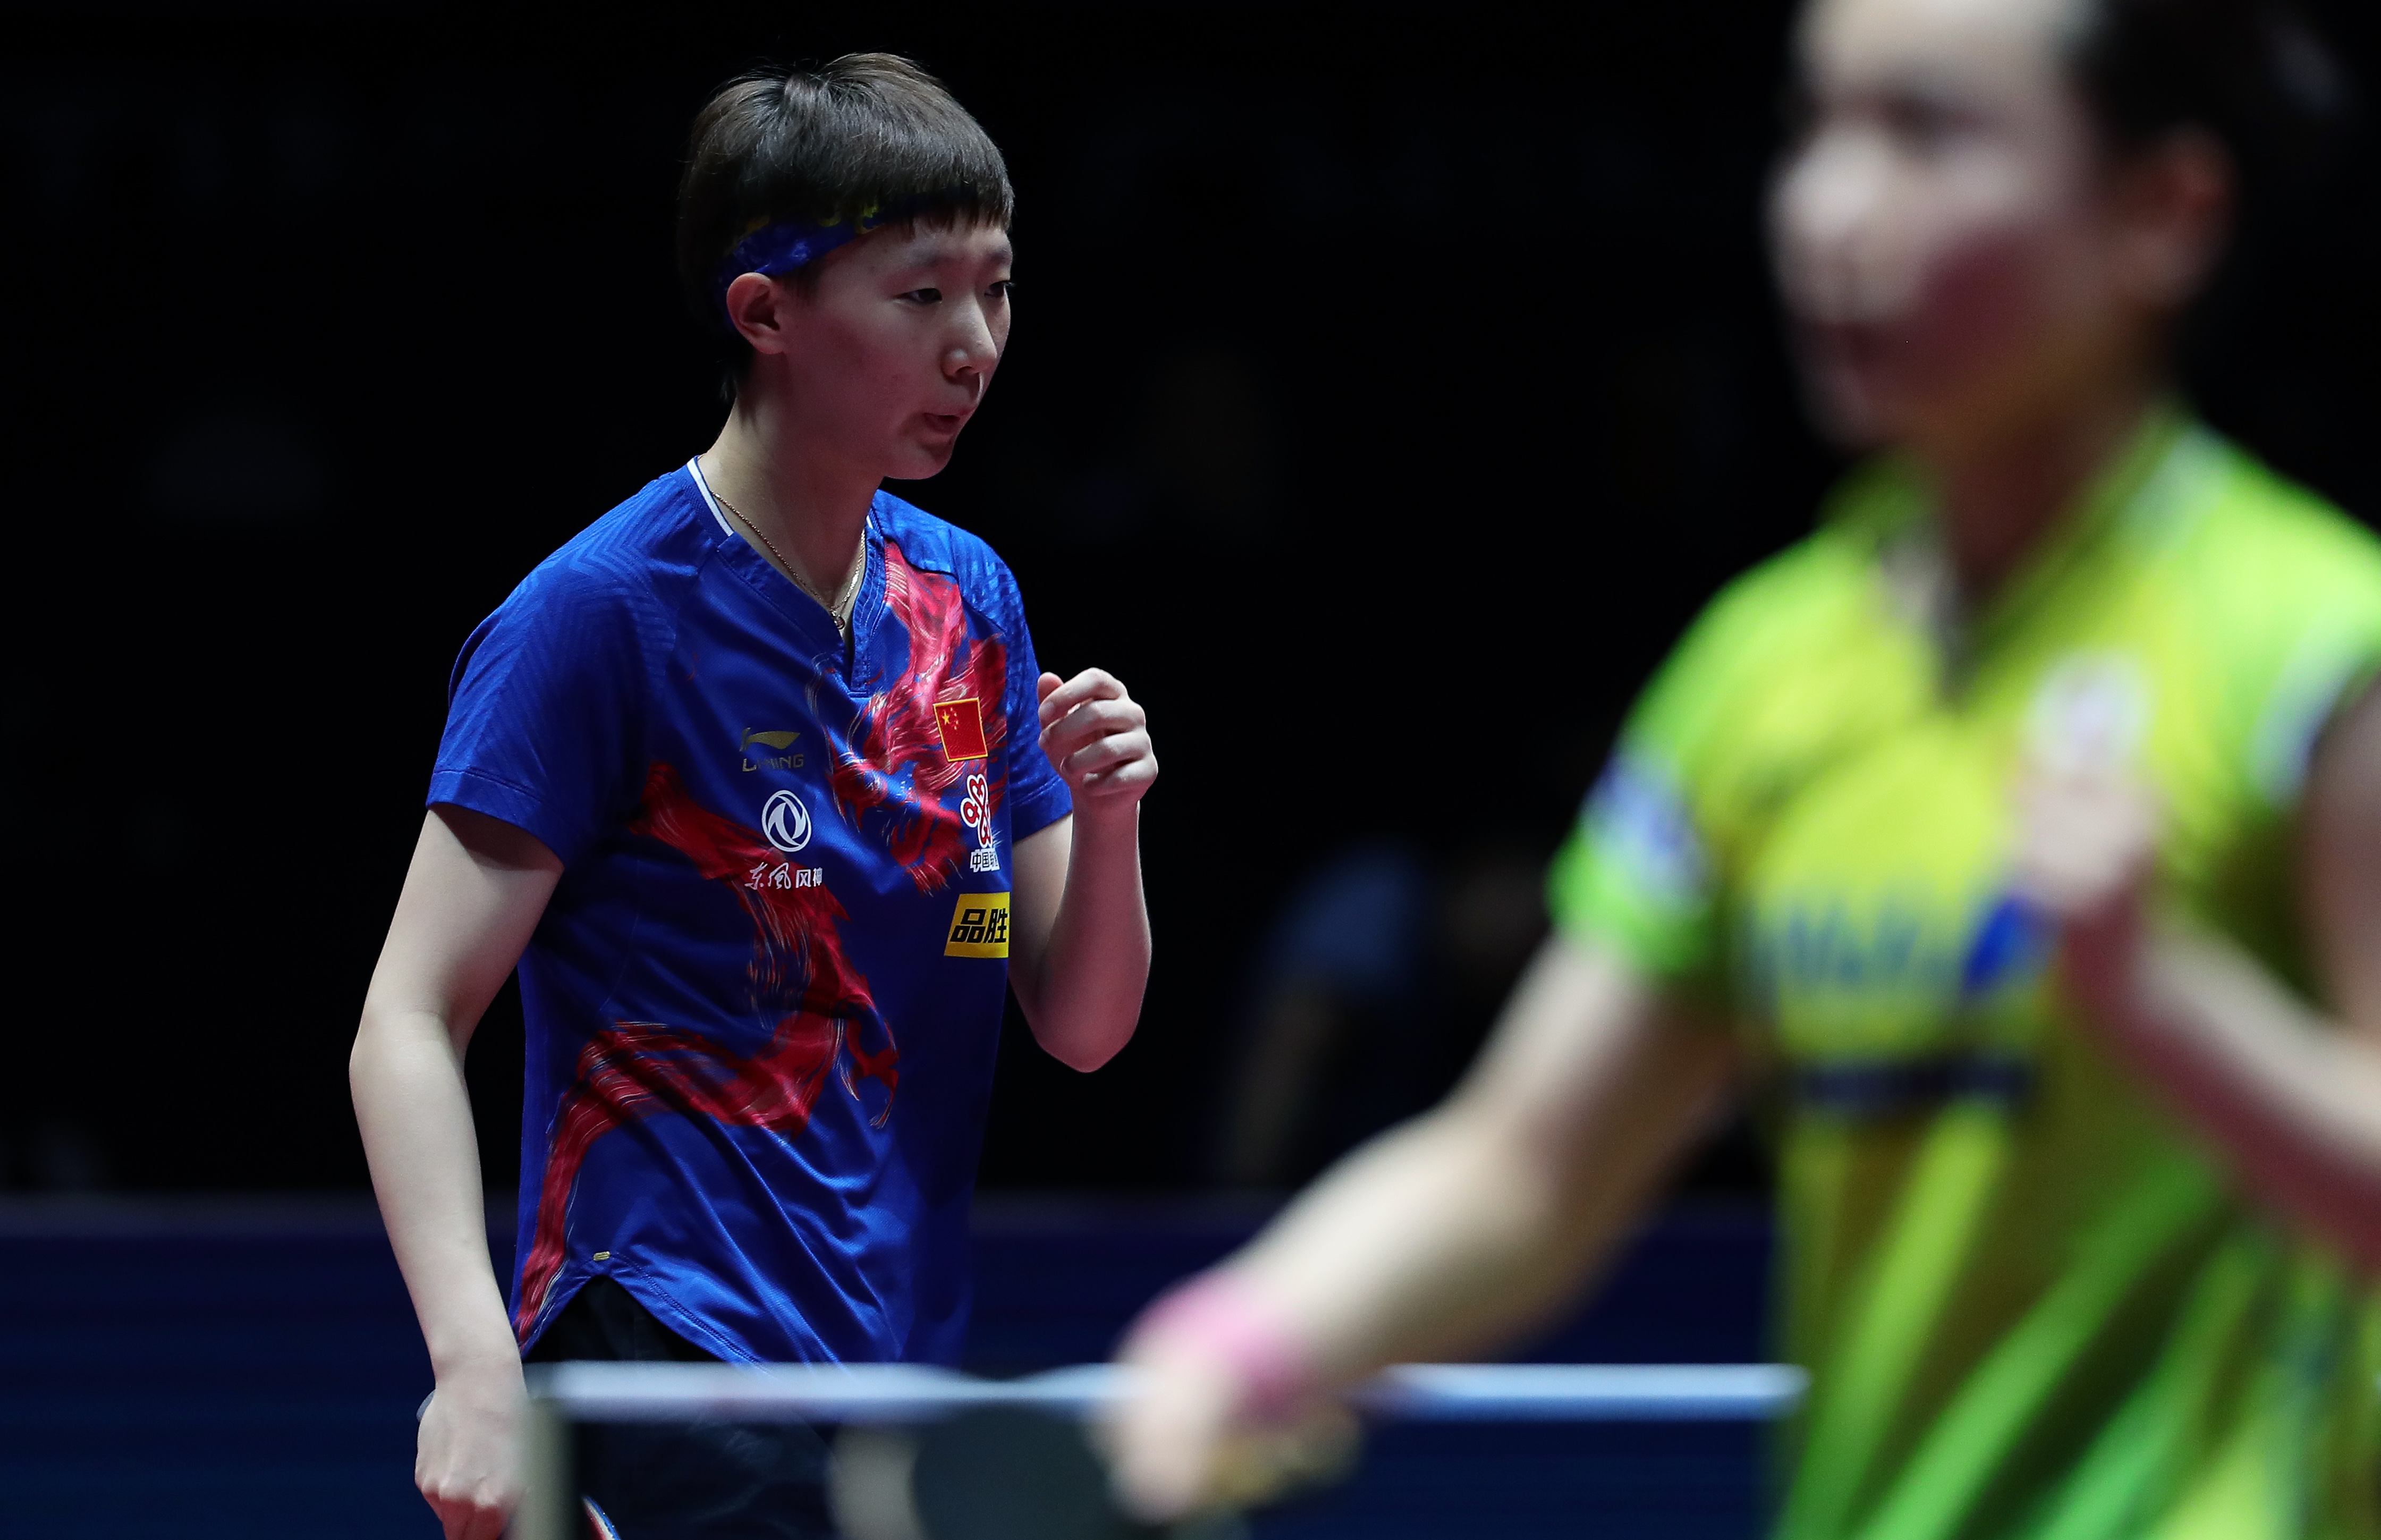 当日,在深圳进行的国际乒联世界巡回赛2019中国乒乓球公开赛女子单打